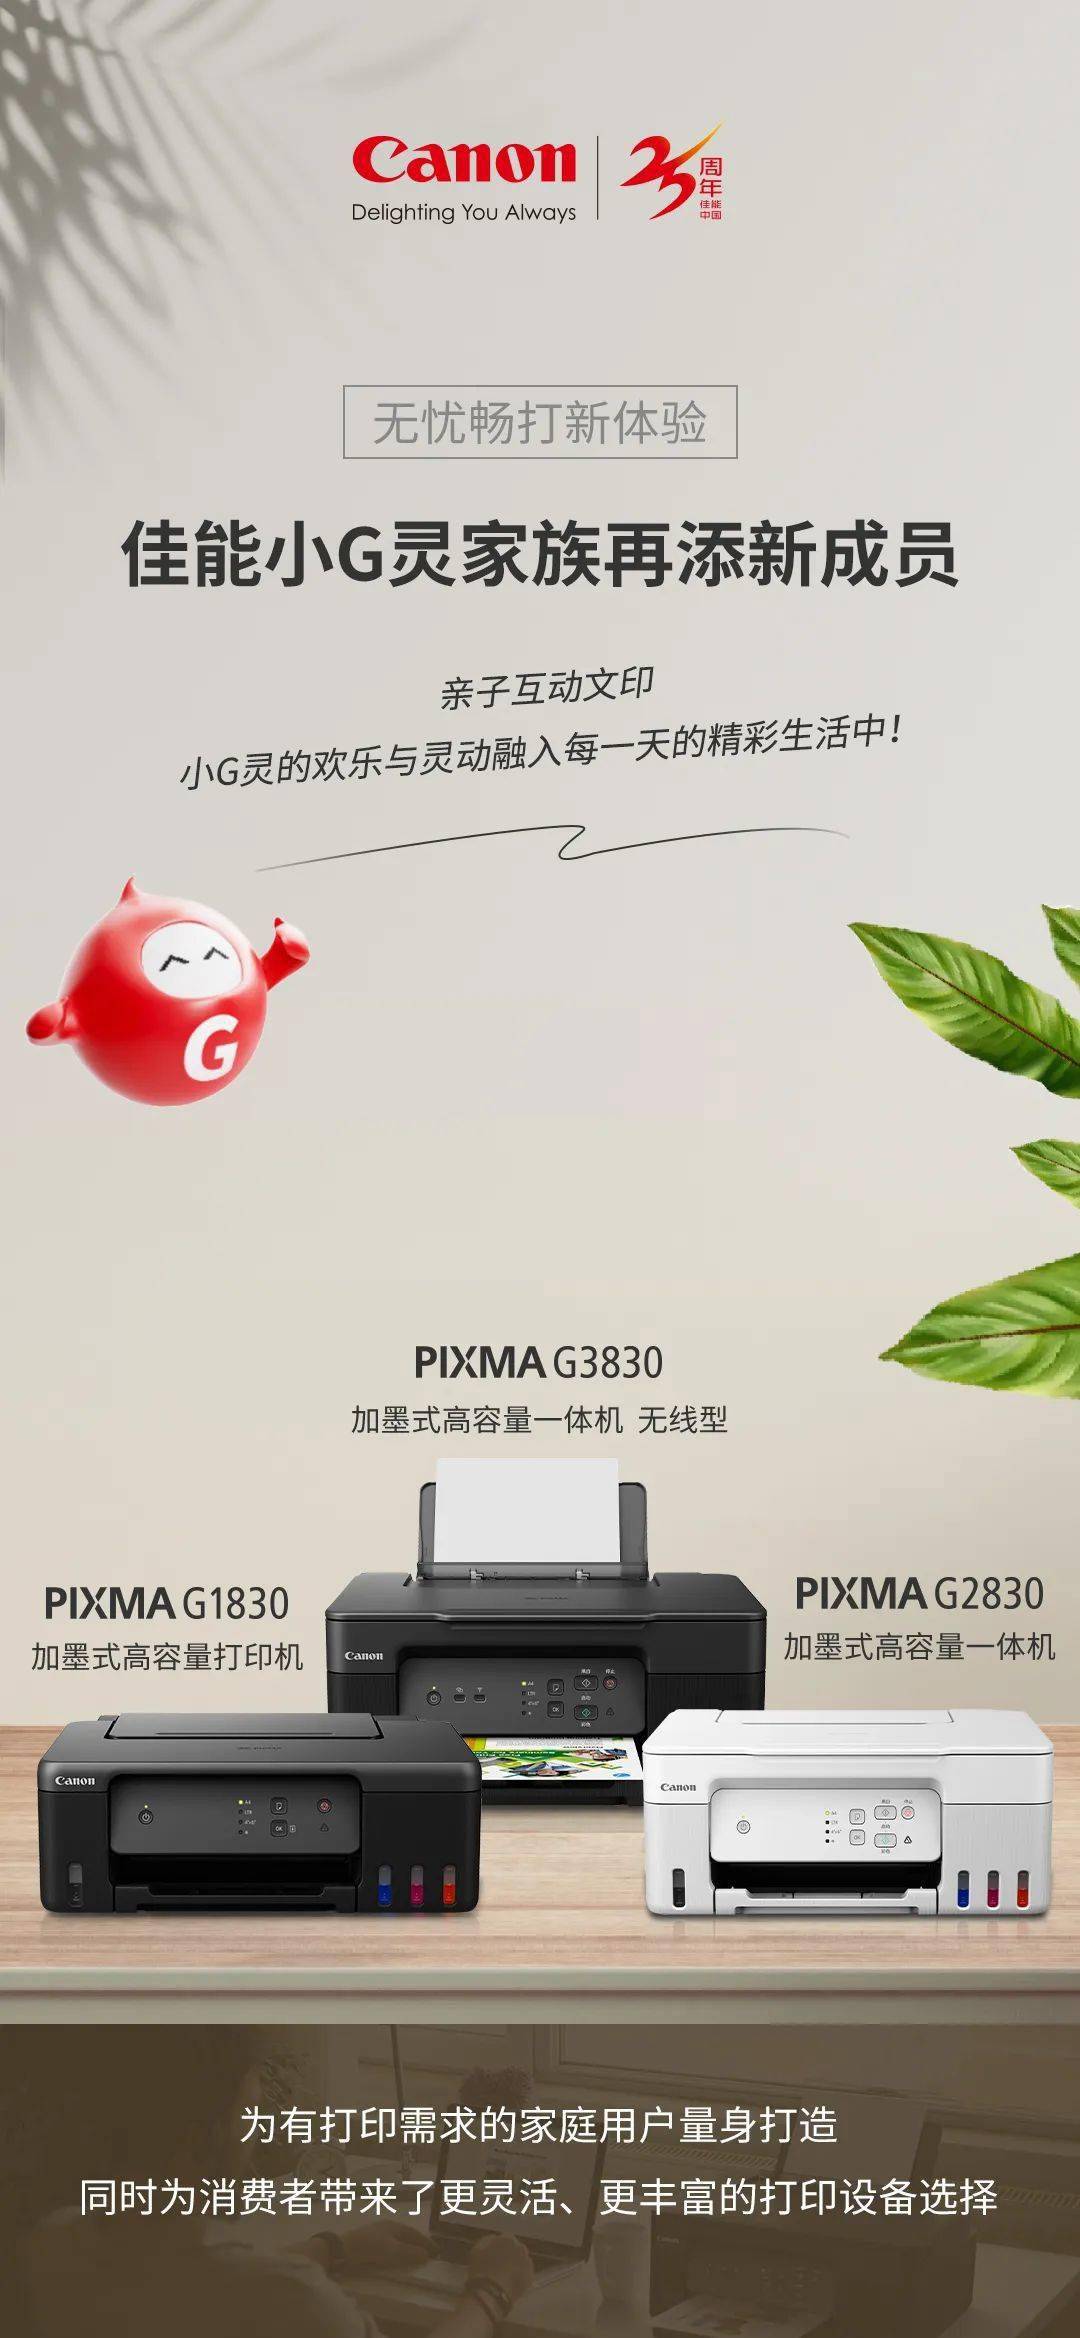 佳能3月21日推出加墨式高容量一体机无线型 PIXMA G3830、G2830 及打印机 G1830